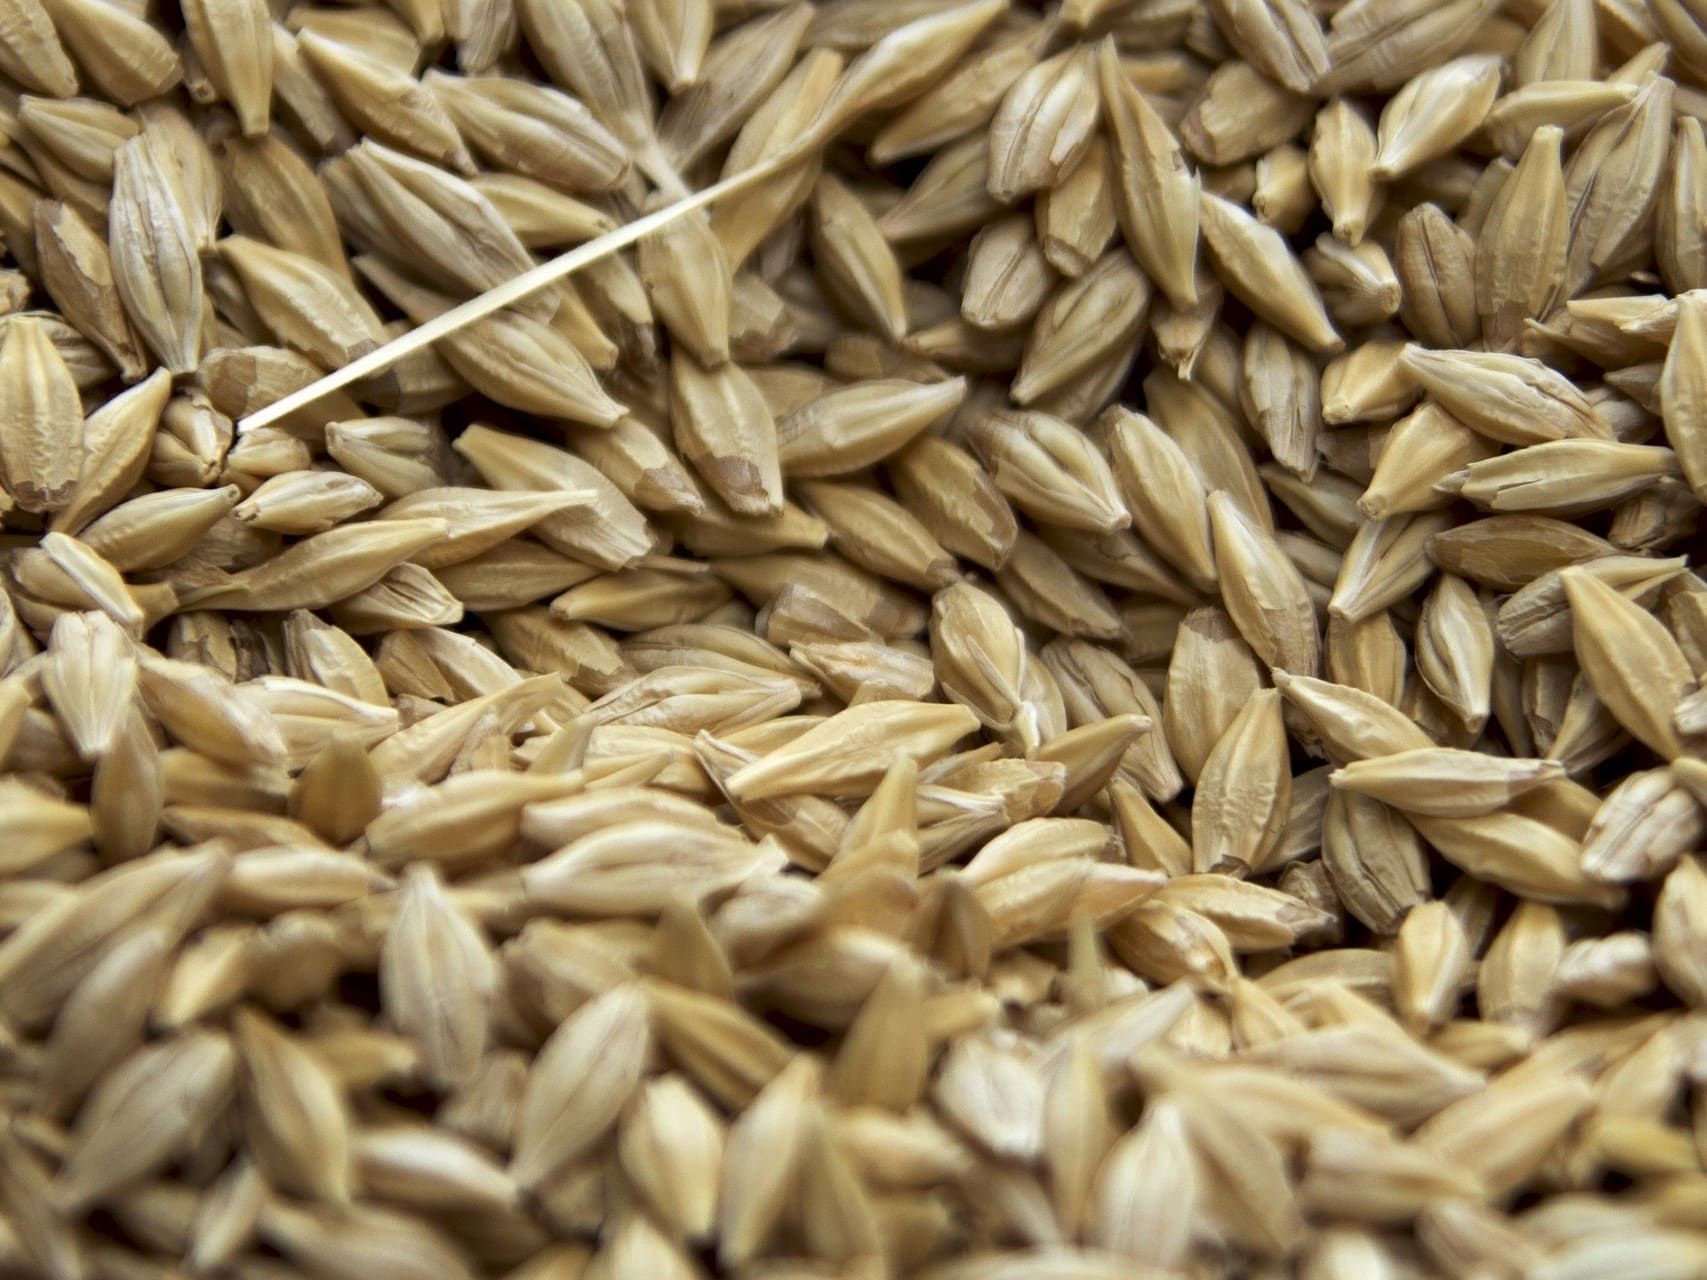 Большая часть собранной пшеницы в этом году относится к 4-му классу. Однако делать выводы по качеству зерна рано